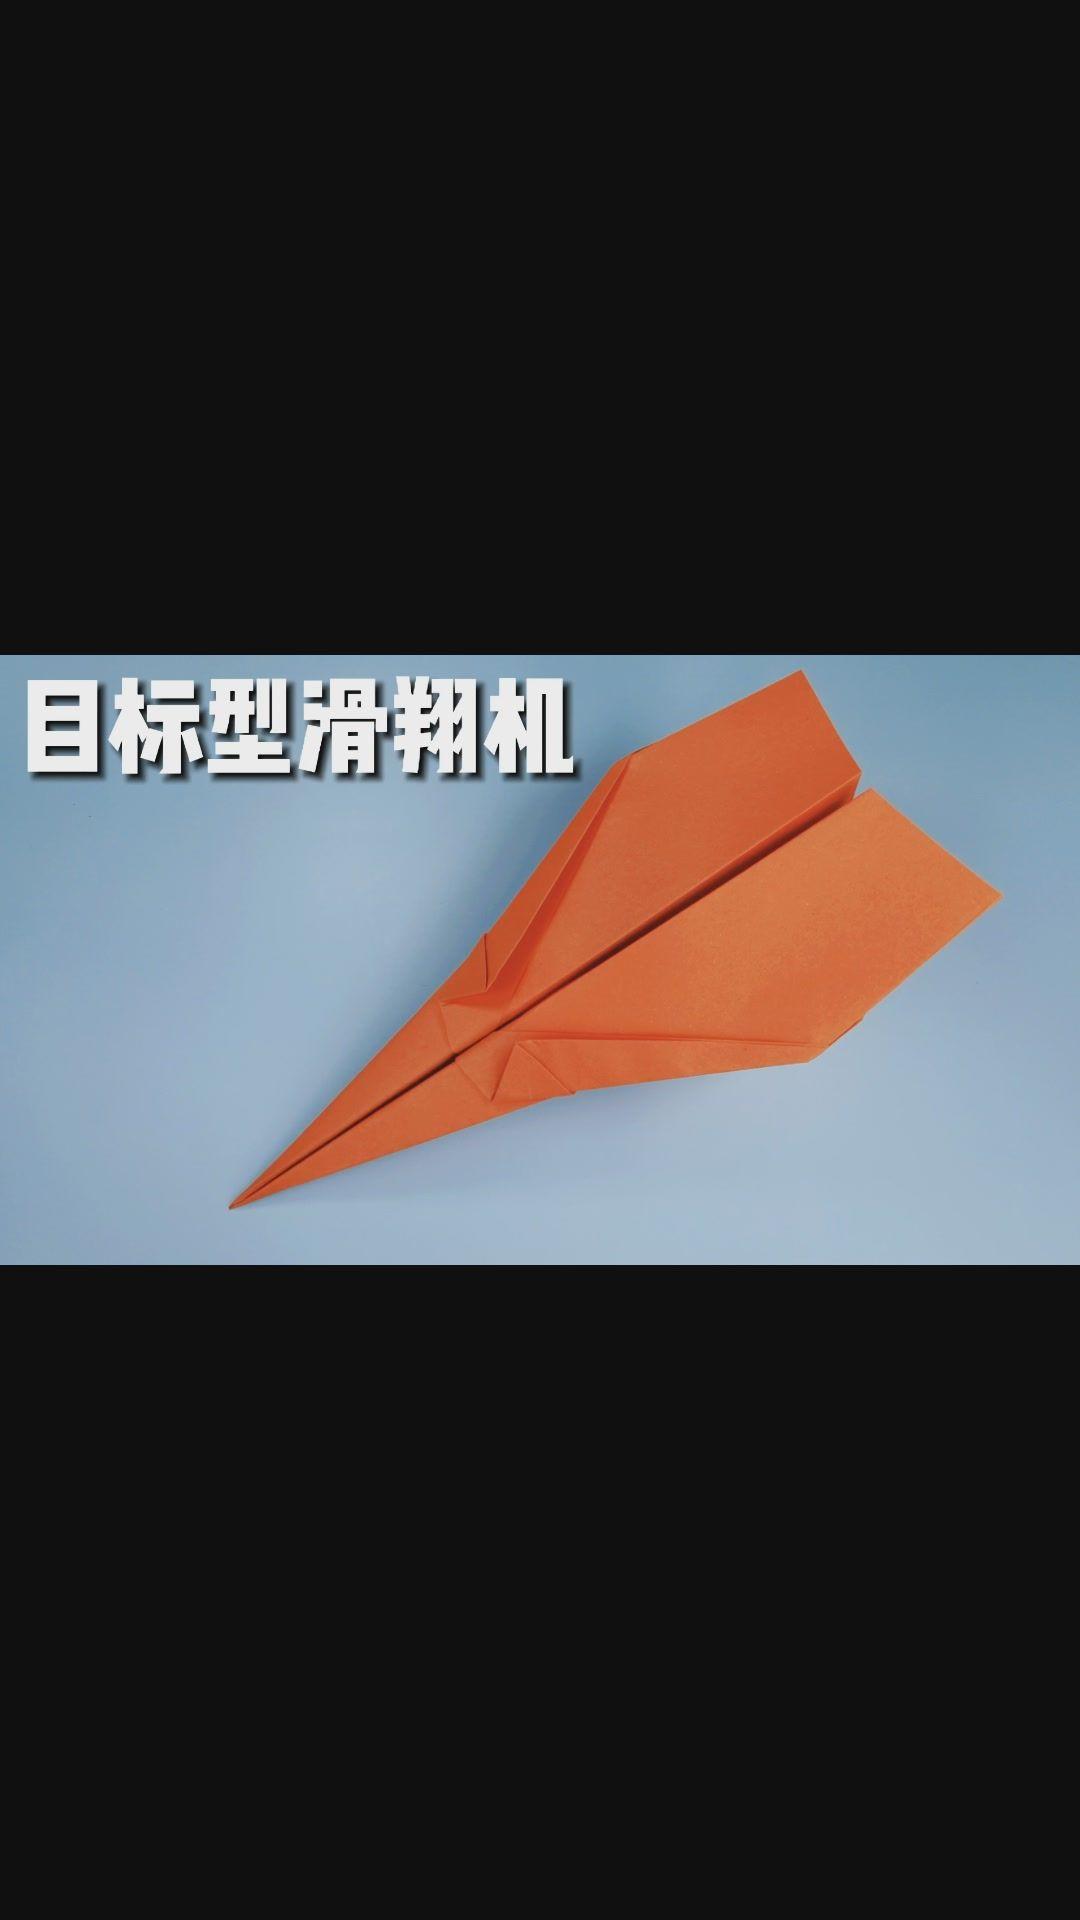 播放纸飞机的视频特别简单_播放纸飞机的视频特别简单怎么办